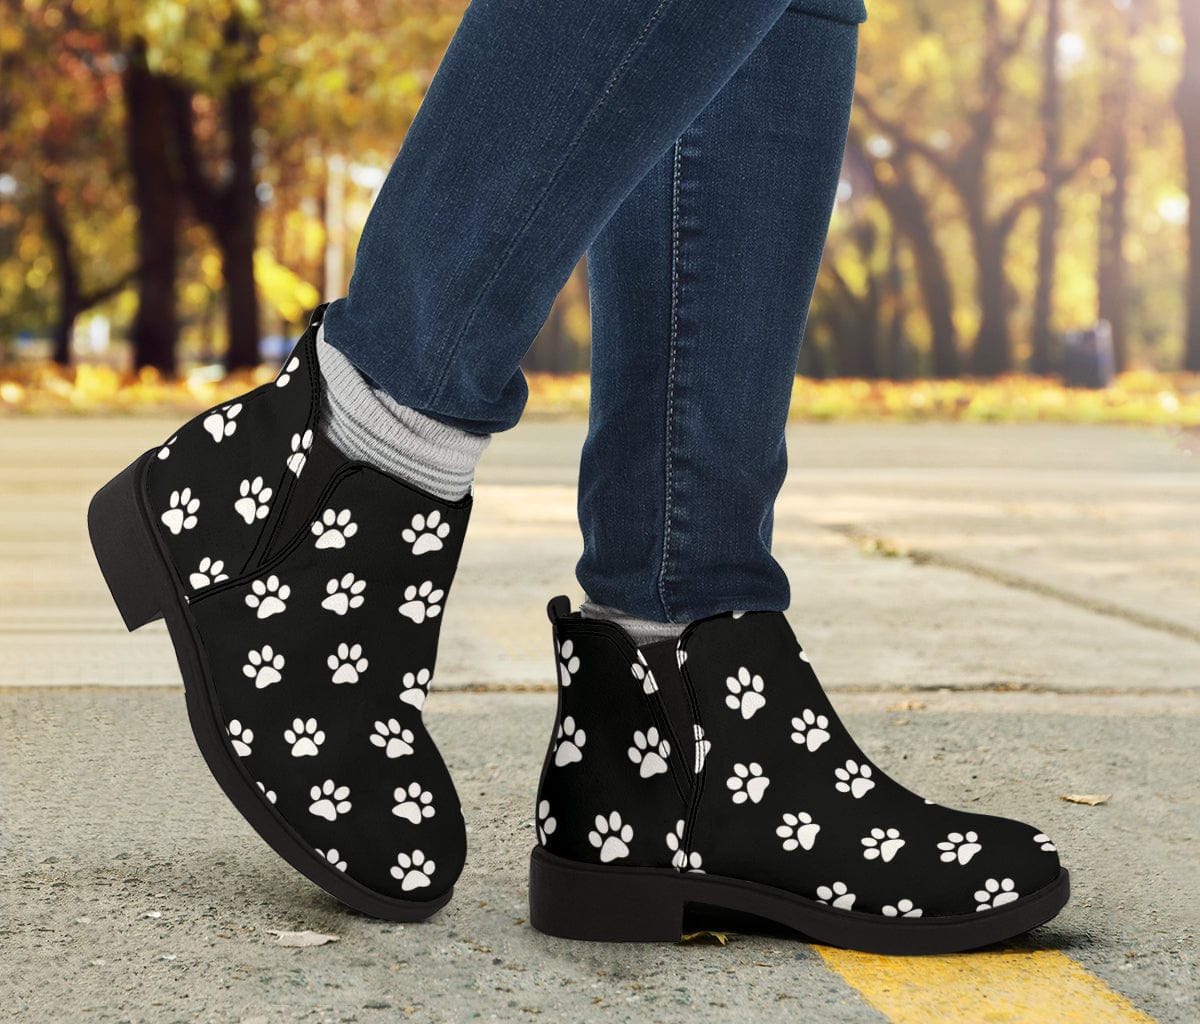 Paw prints fashion boots